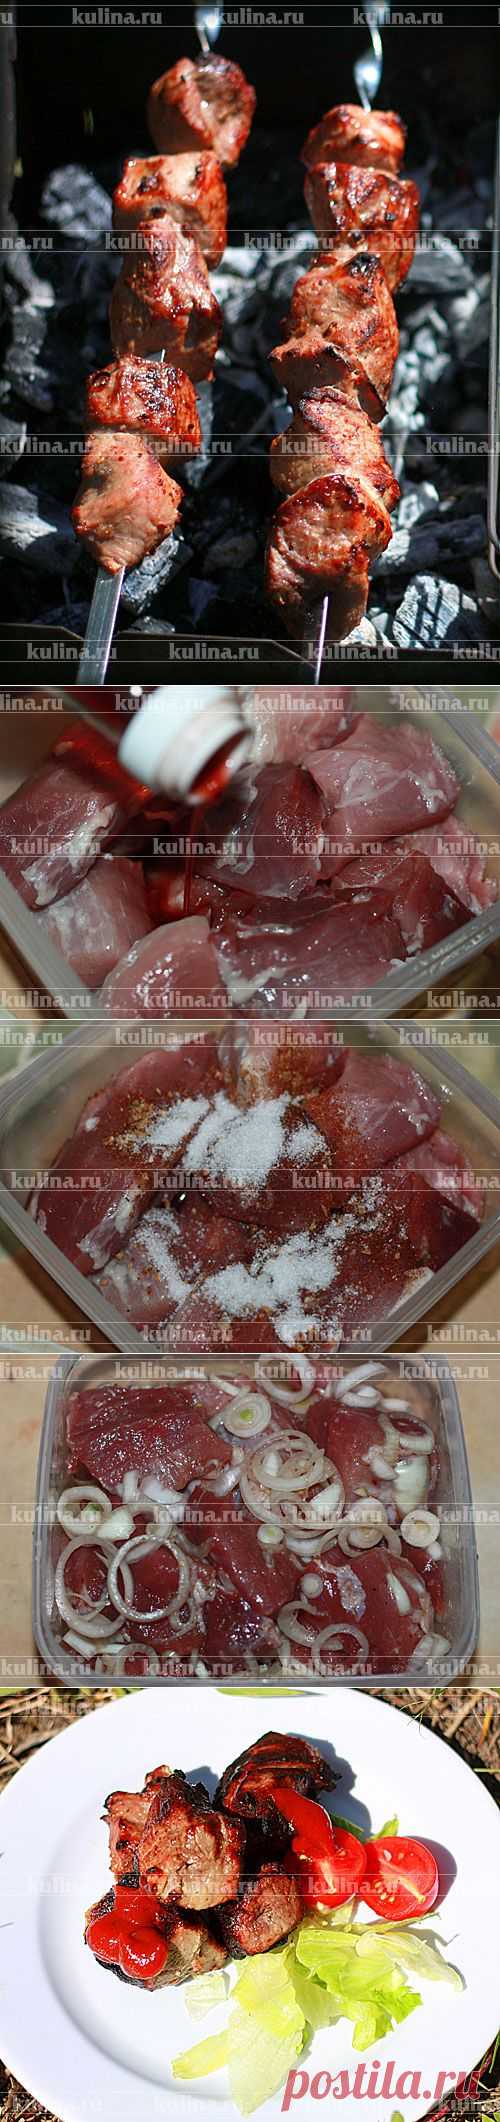 Шашлык из свинины в винном уксусе – рецепт приготовления с фото от Kulina.Ru